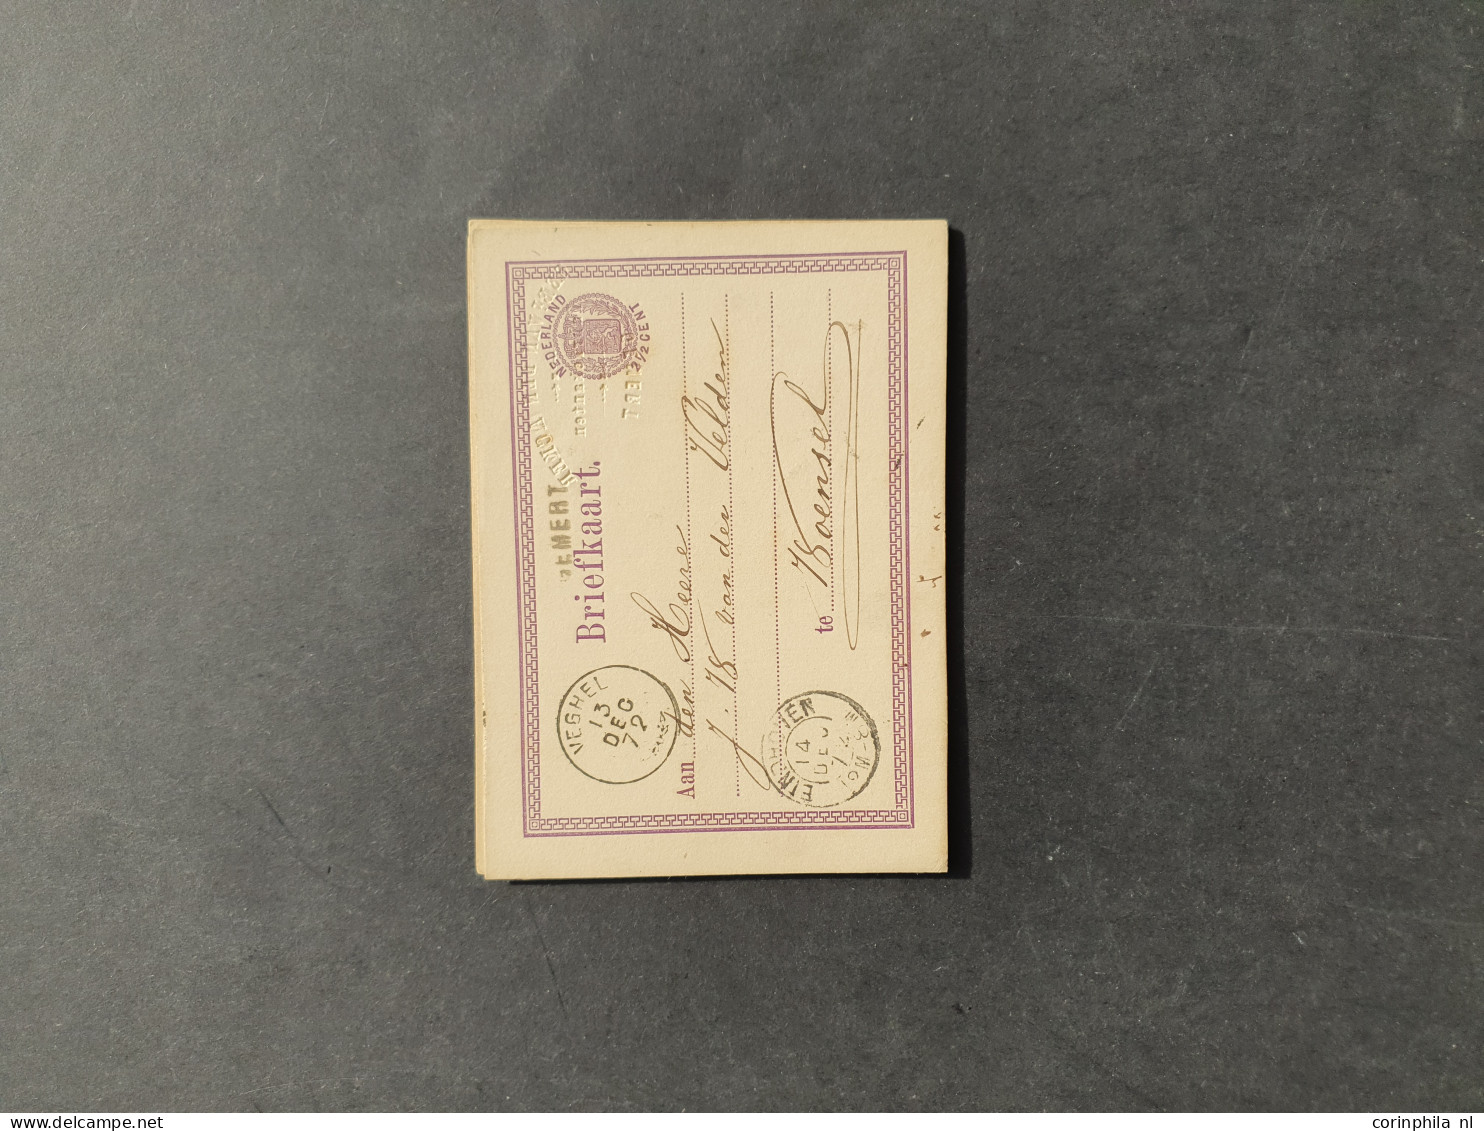 Cover 1871-1945ca. postwaardestukken, briefkaarten met adres afzender in reliëf (ca. 100 ex.) alle gebruikt w.b. reliëf 